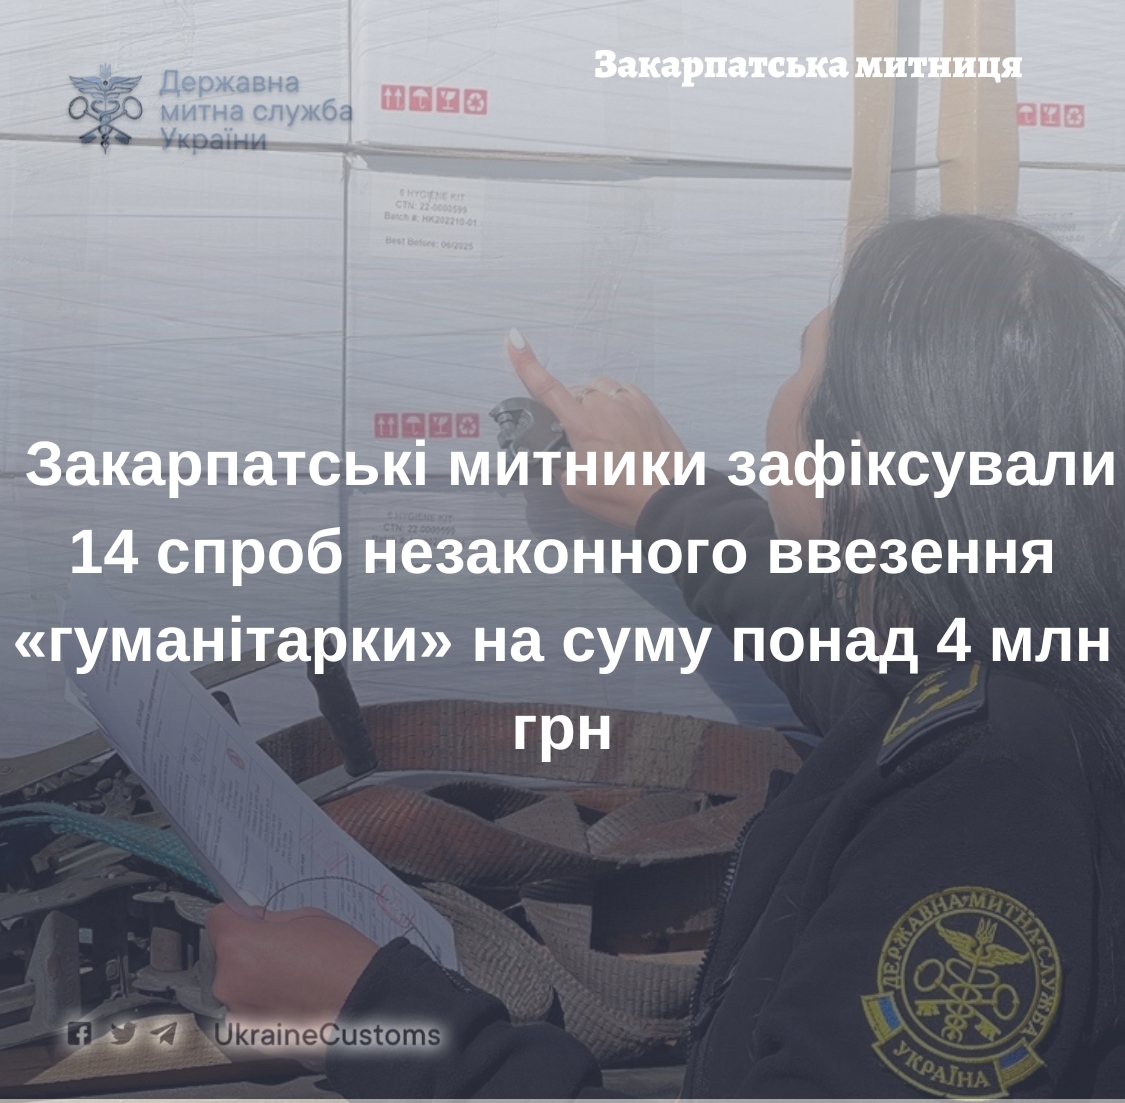 На митниці на Закарпатті зафіксували 14 спроб незаконного ввезення "гуманітарки" на понад 4 млн грн